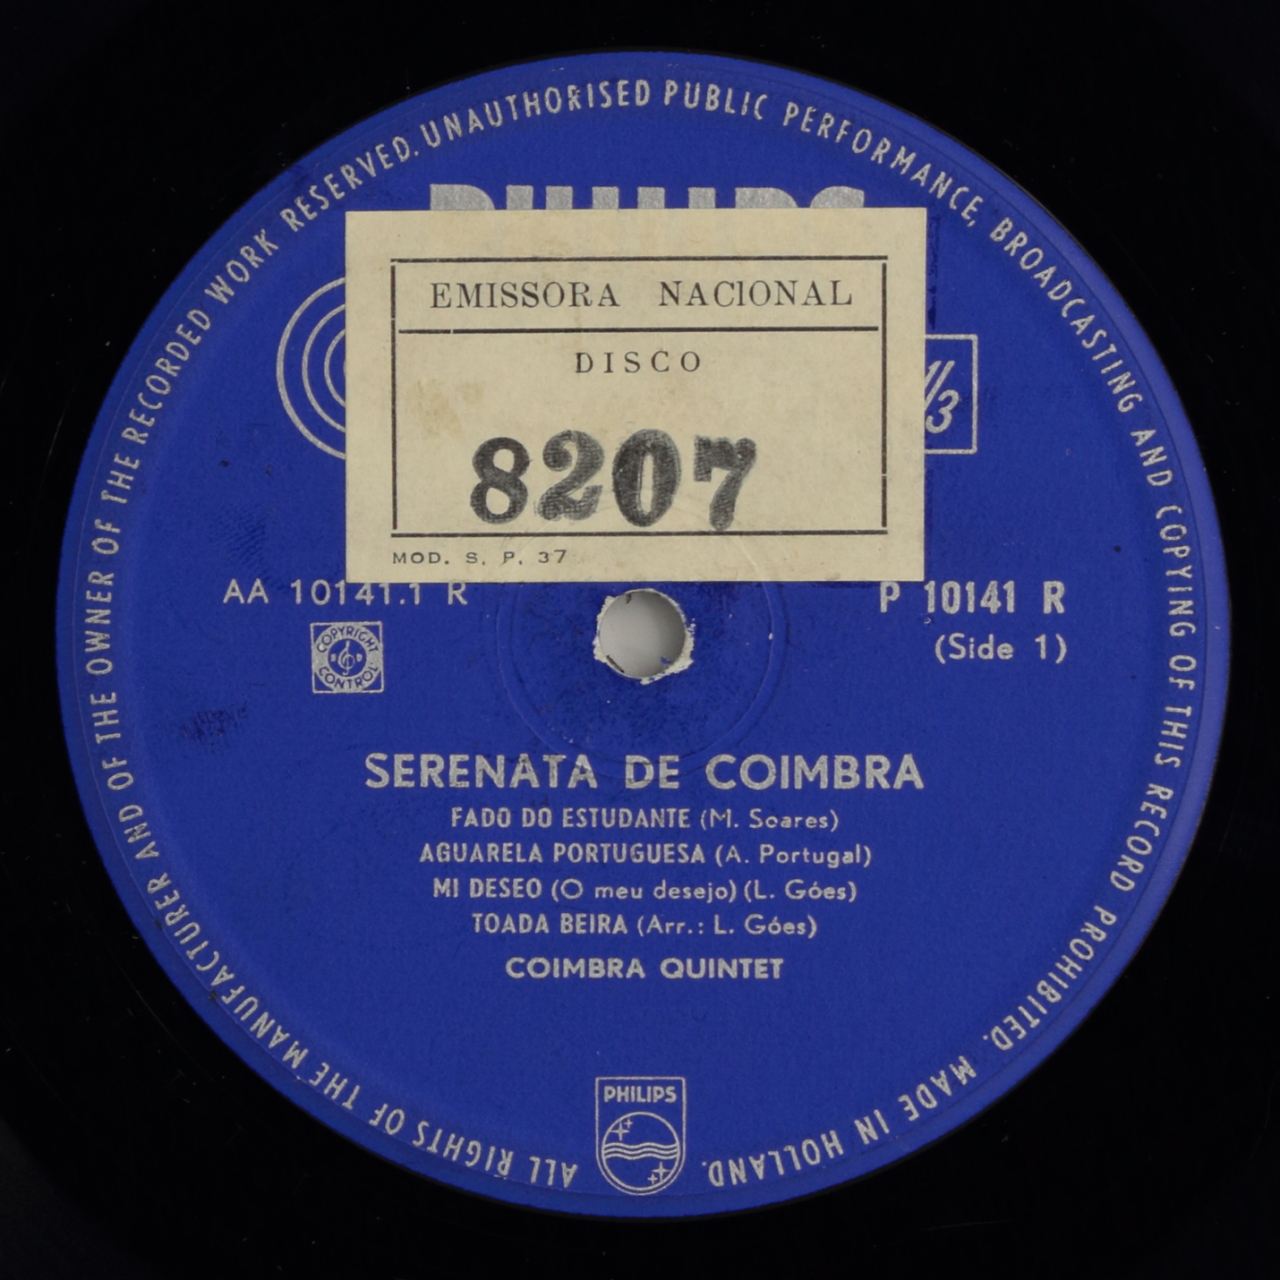 Serenata de Coimbra